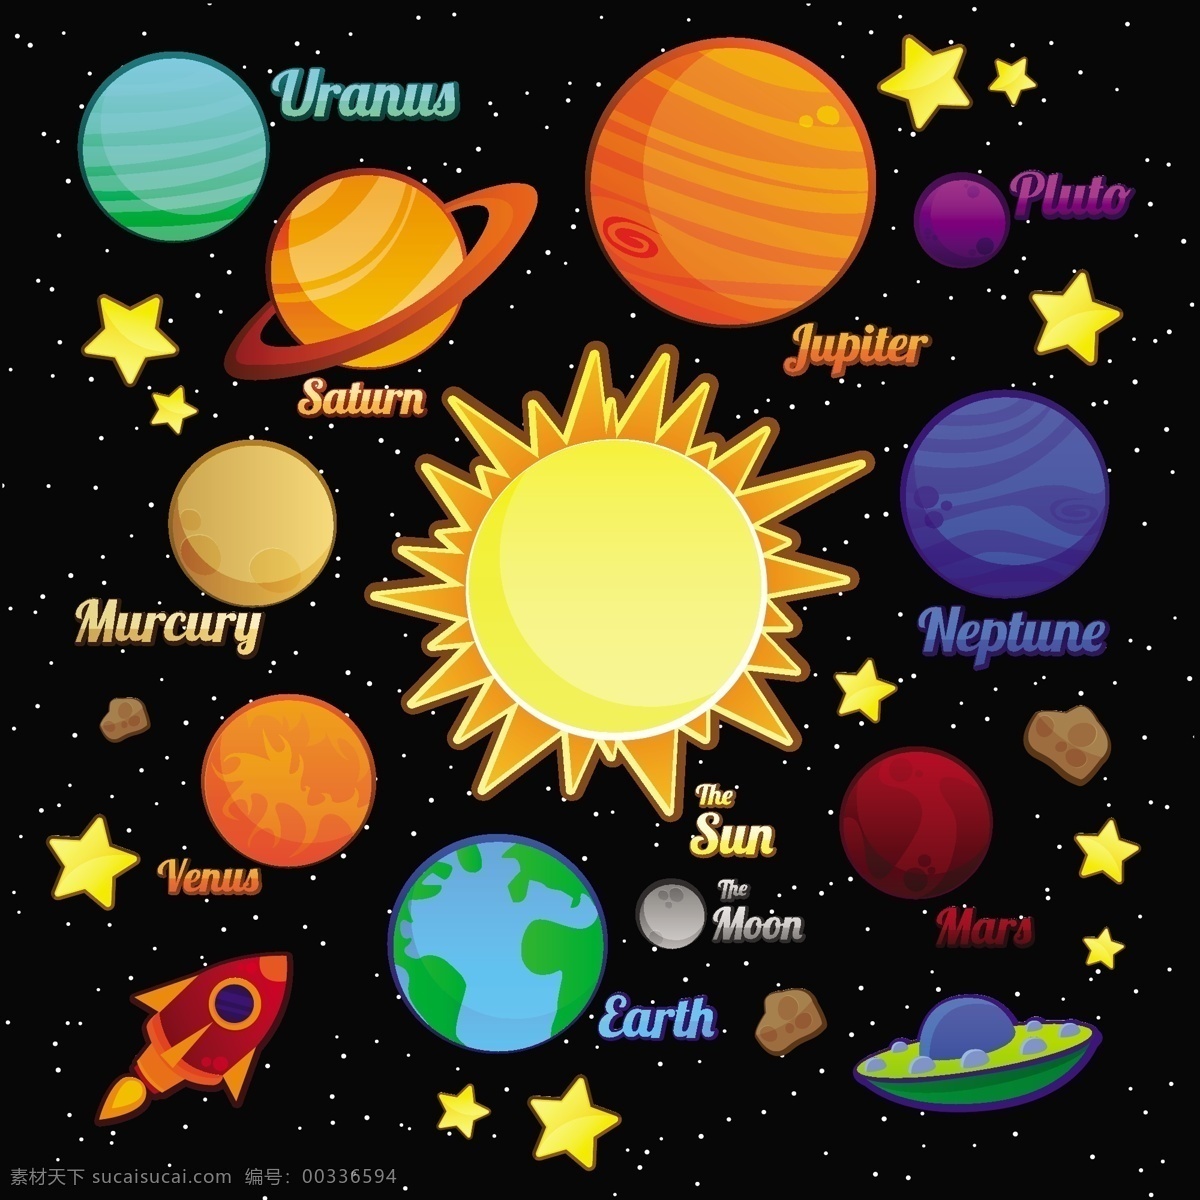 太阳系星球 矢量星球 九大行星 地球 火星 水星 冥王星 木星 金星 土星 天王星 海王星 卡通形象 可爱星球 卡通星球 太阳系 八大行星 星球英文 零售素材